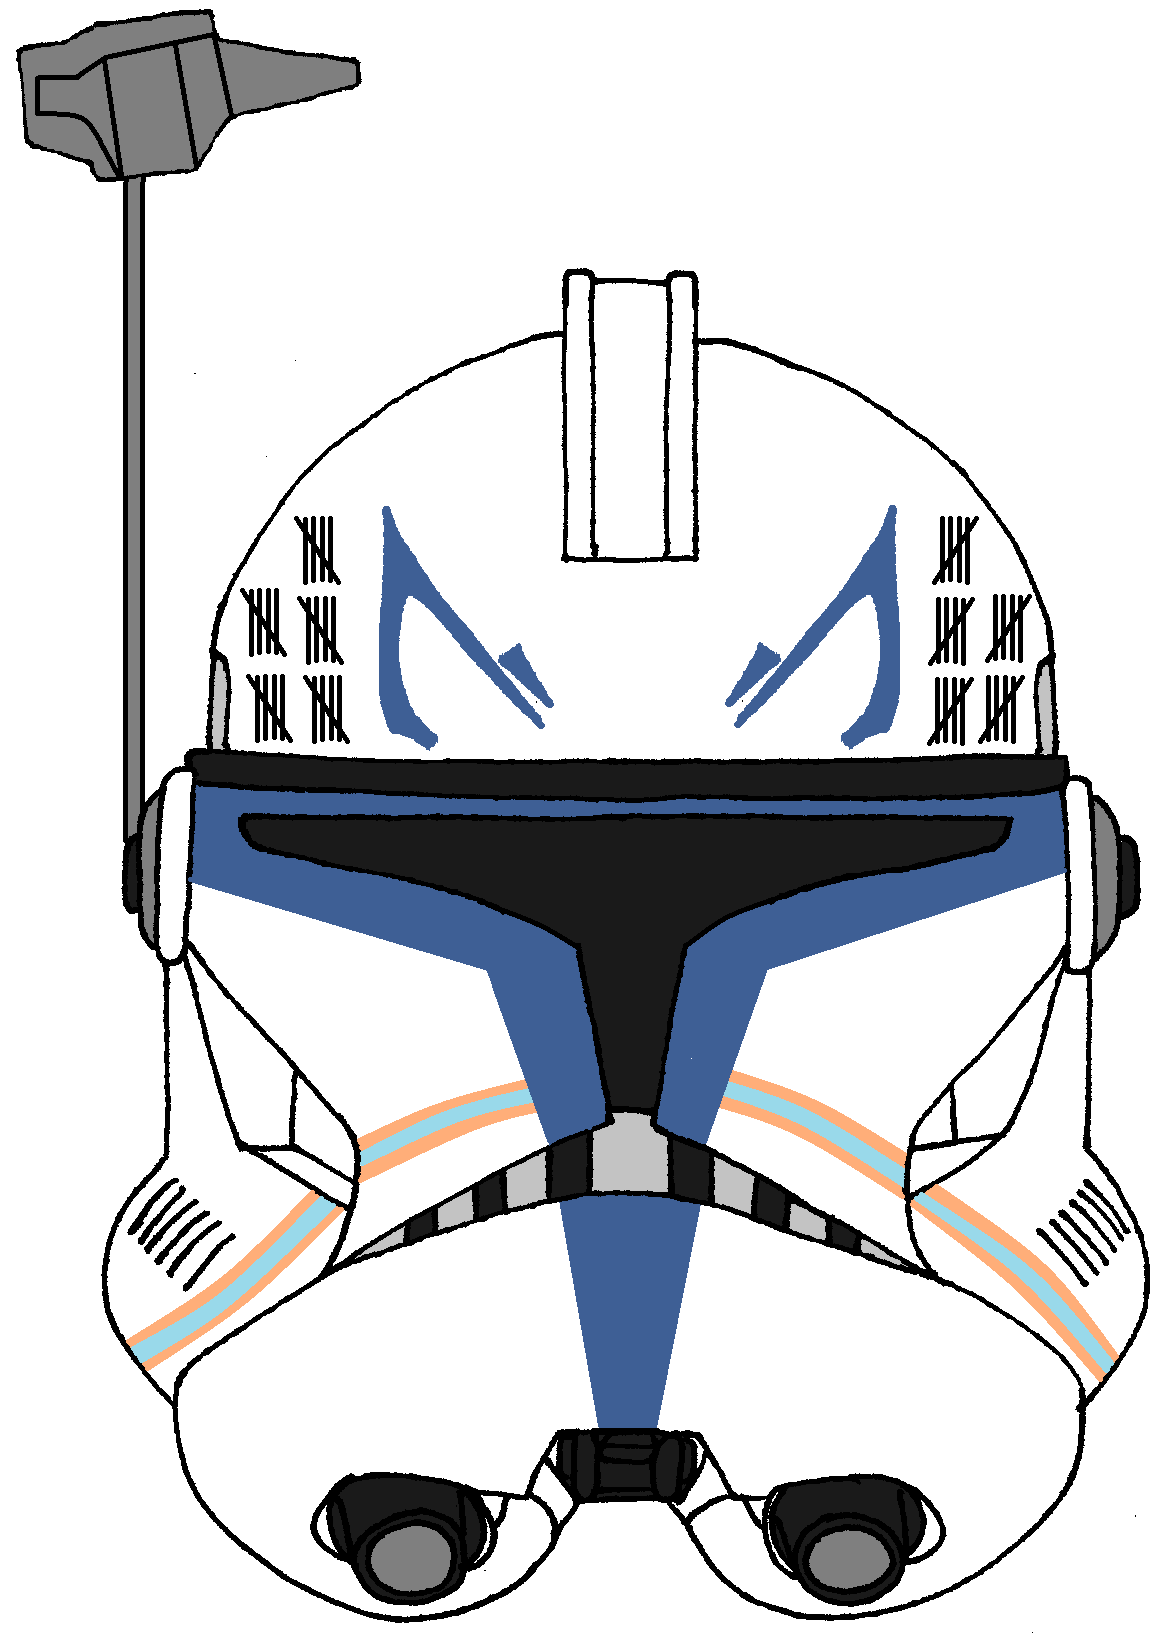 Clone Trooper Captain Rex's Helmet 3. Star wars drawings, Star wars art, Star wars helmet